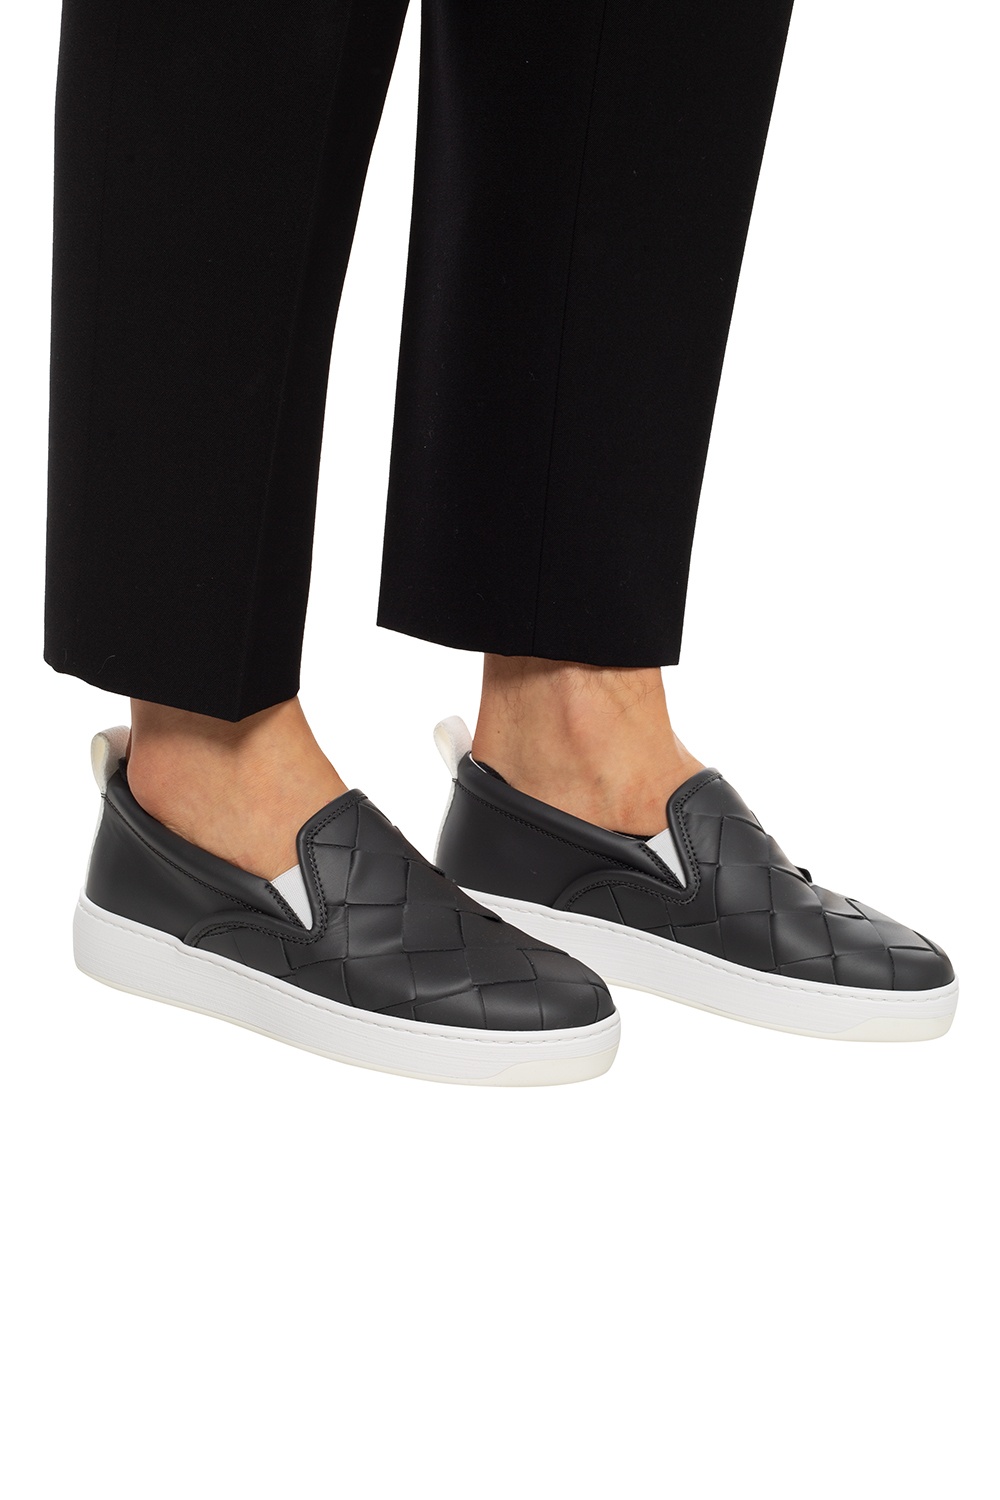 Bottega Slip-on shoes | Men's Shoes Vitkac